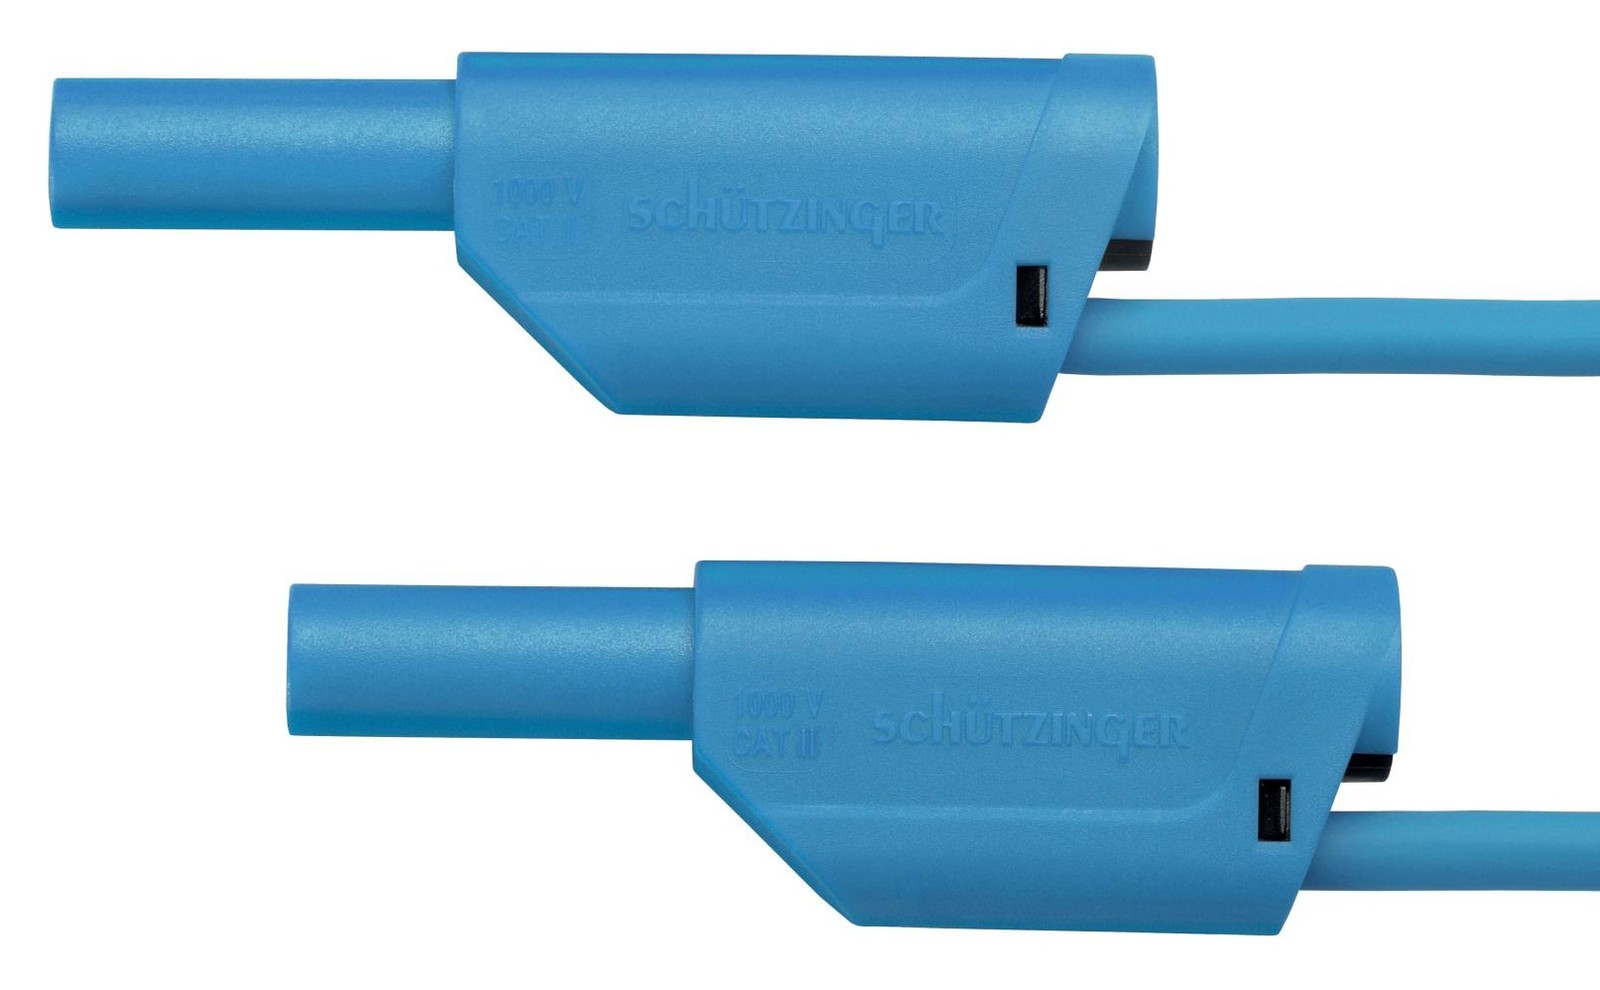 Schutzinger Vsfk 5000 / 1 / 50 / Bl Test Lead, Stackable Banana Plug, 500mm